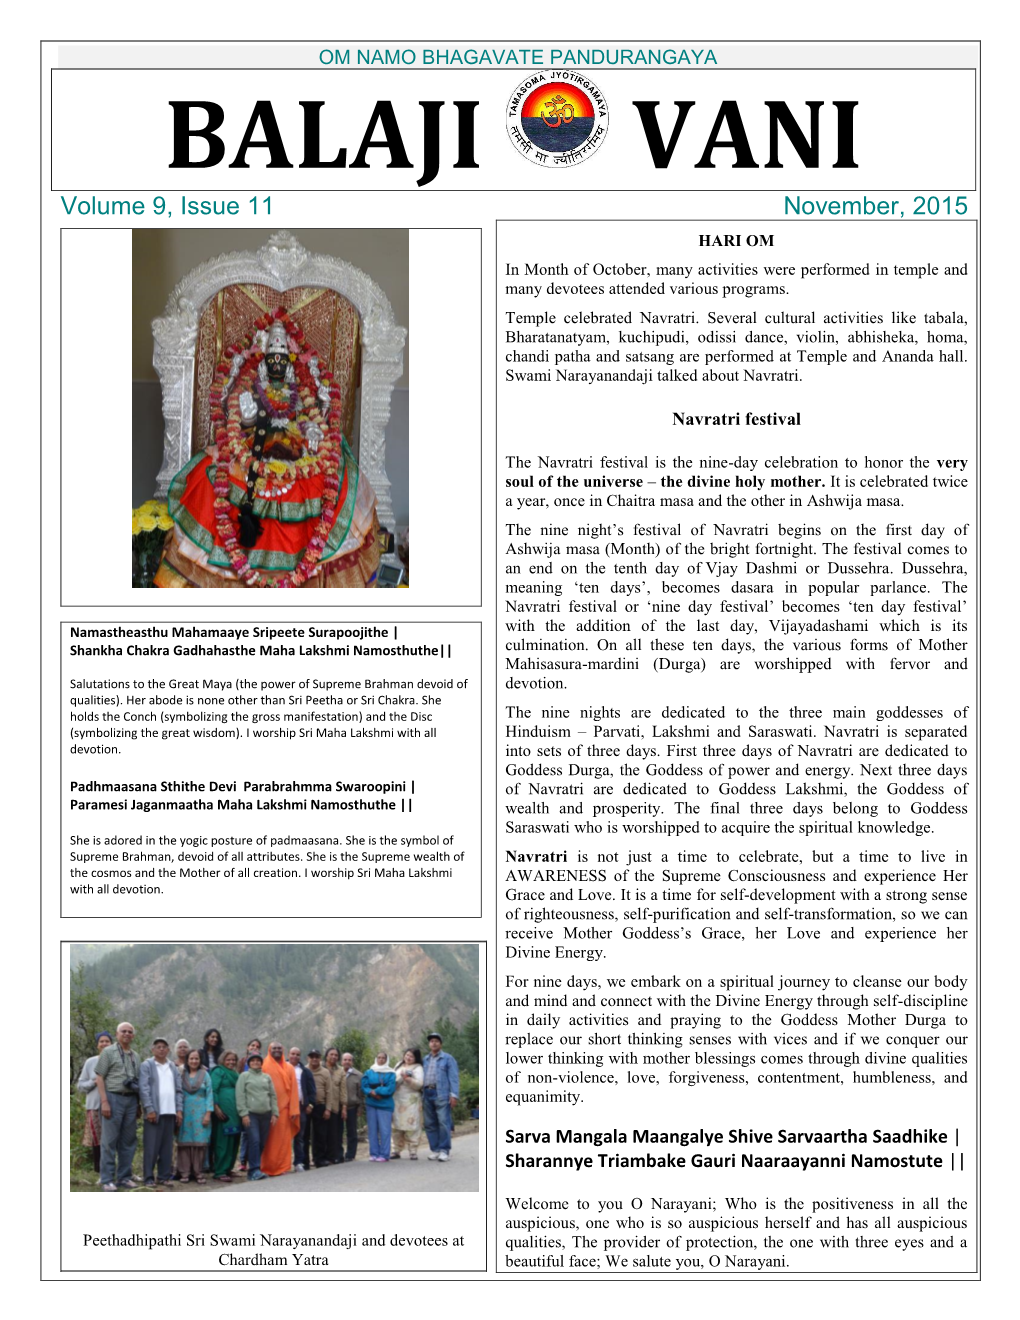 OM NAMO BHAGAVATE PANDURANGAYA BALAJI VANI Volume 9, Issue 11 November, 2015